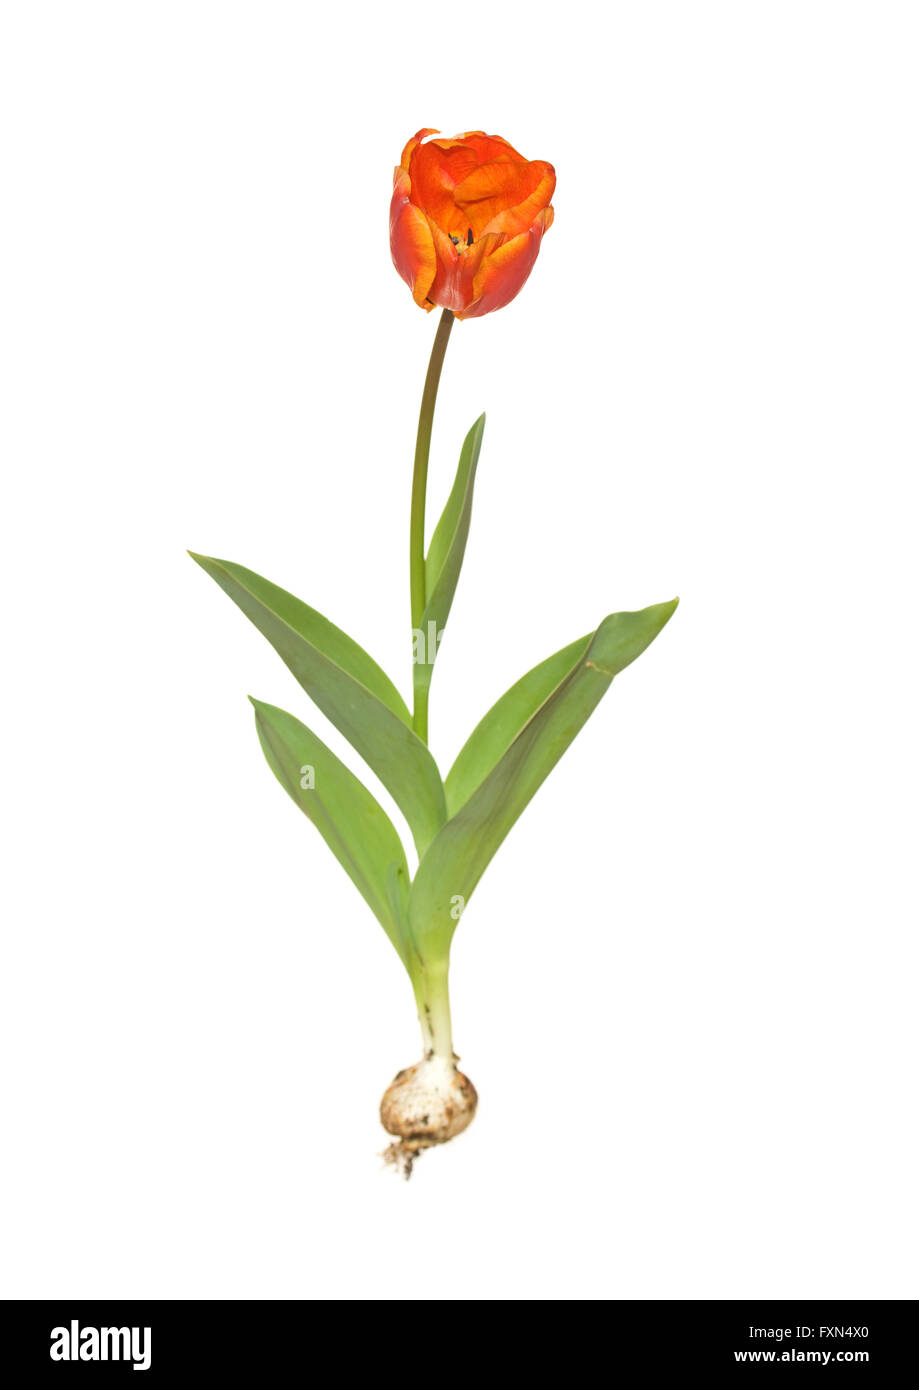 whole tulip christmas orange with bulb Stock Photo